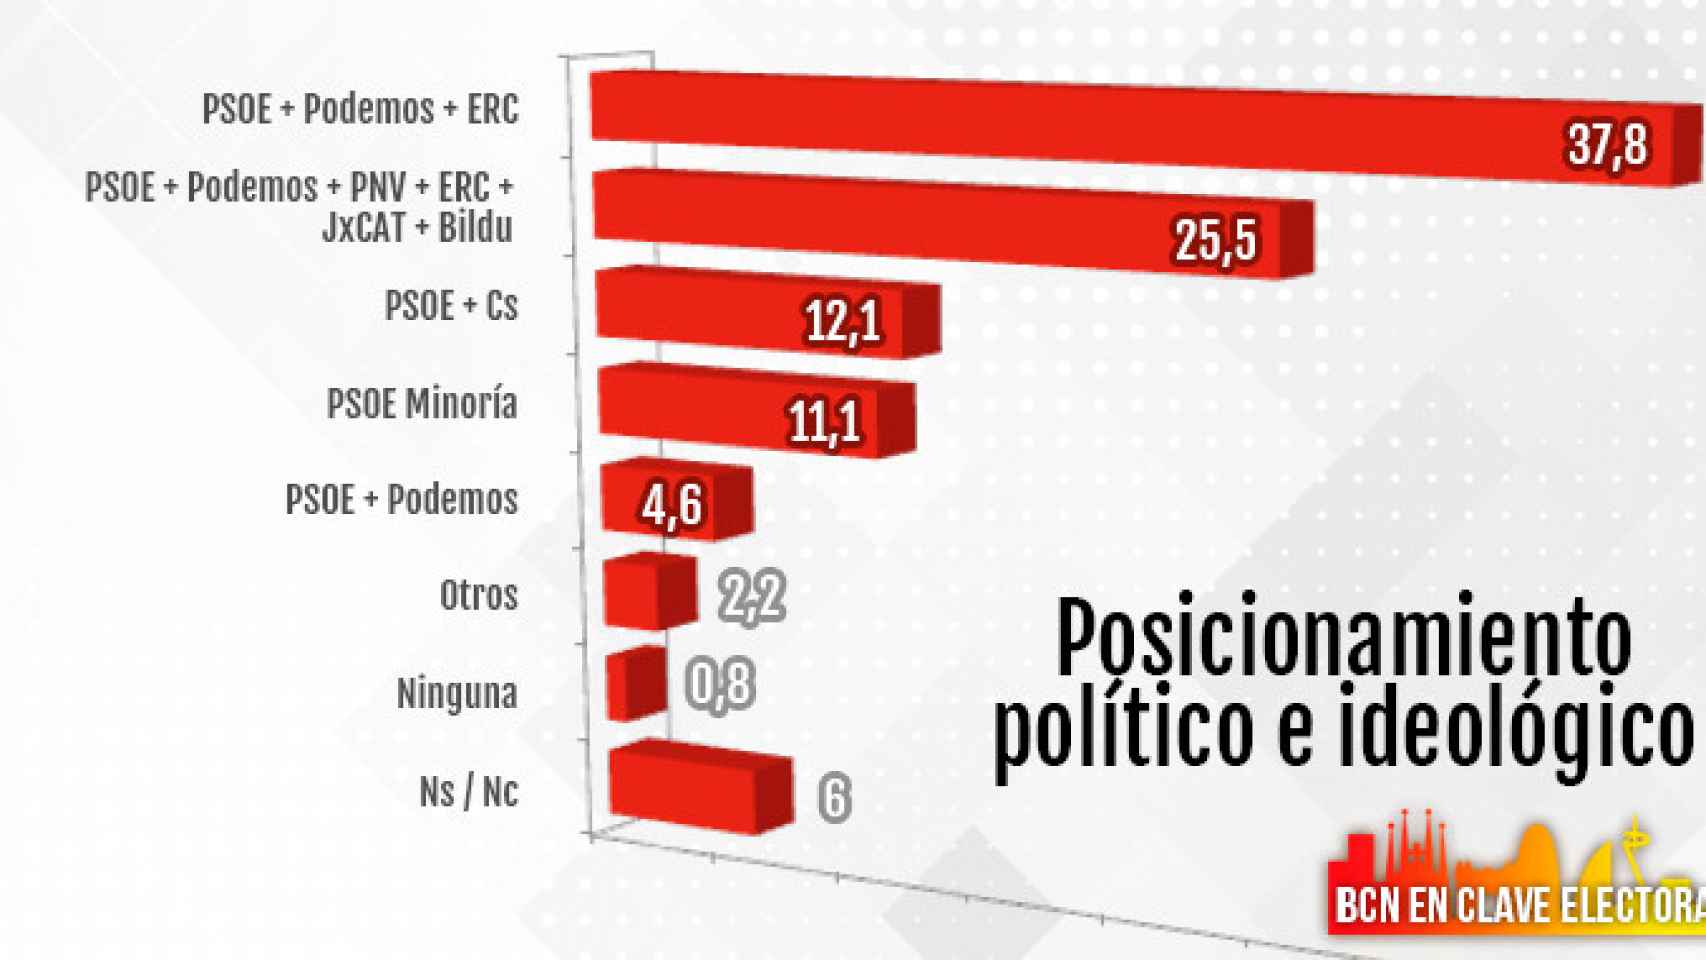 Posicionamiento político e ideológico, con los pactos preferidos por los barceloneses en España / CG